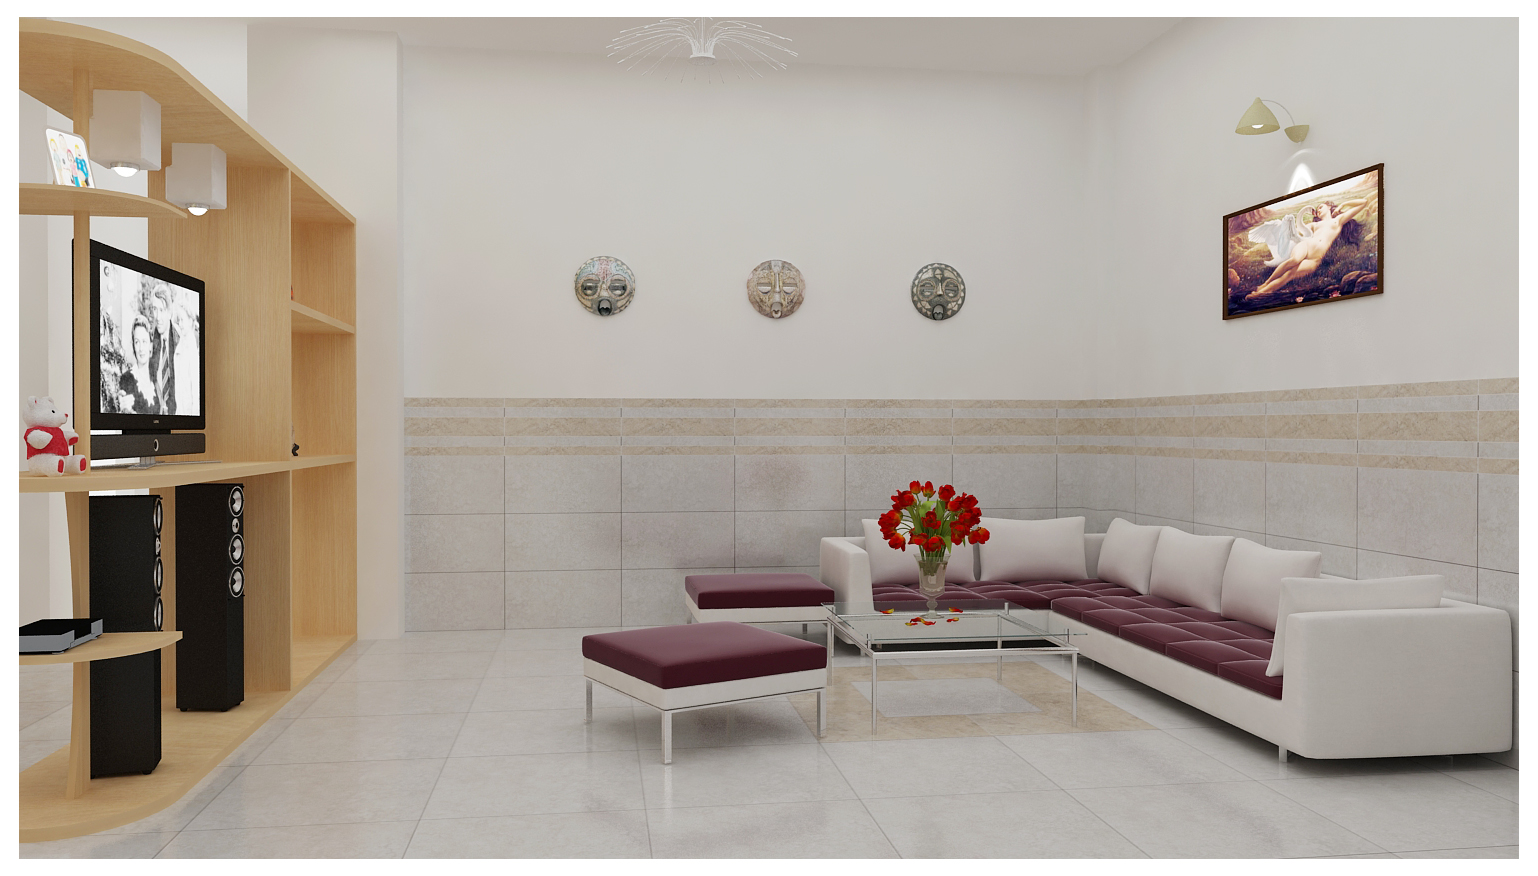 Trang trí phòng khách của bạn với những mẫu gạch ốp tường mang đến cảm giác sang trọng và lịch sự. Đa dạng về màu sắc và kiểu dáng, hãy tìm kiếm những mẫu gạch ốp tường được thiết kế độc đáo để mang đến không gian sống thật trọn vẹn.